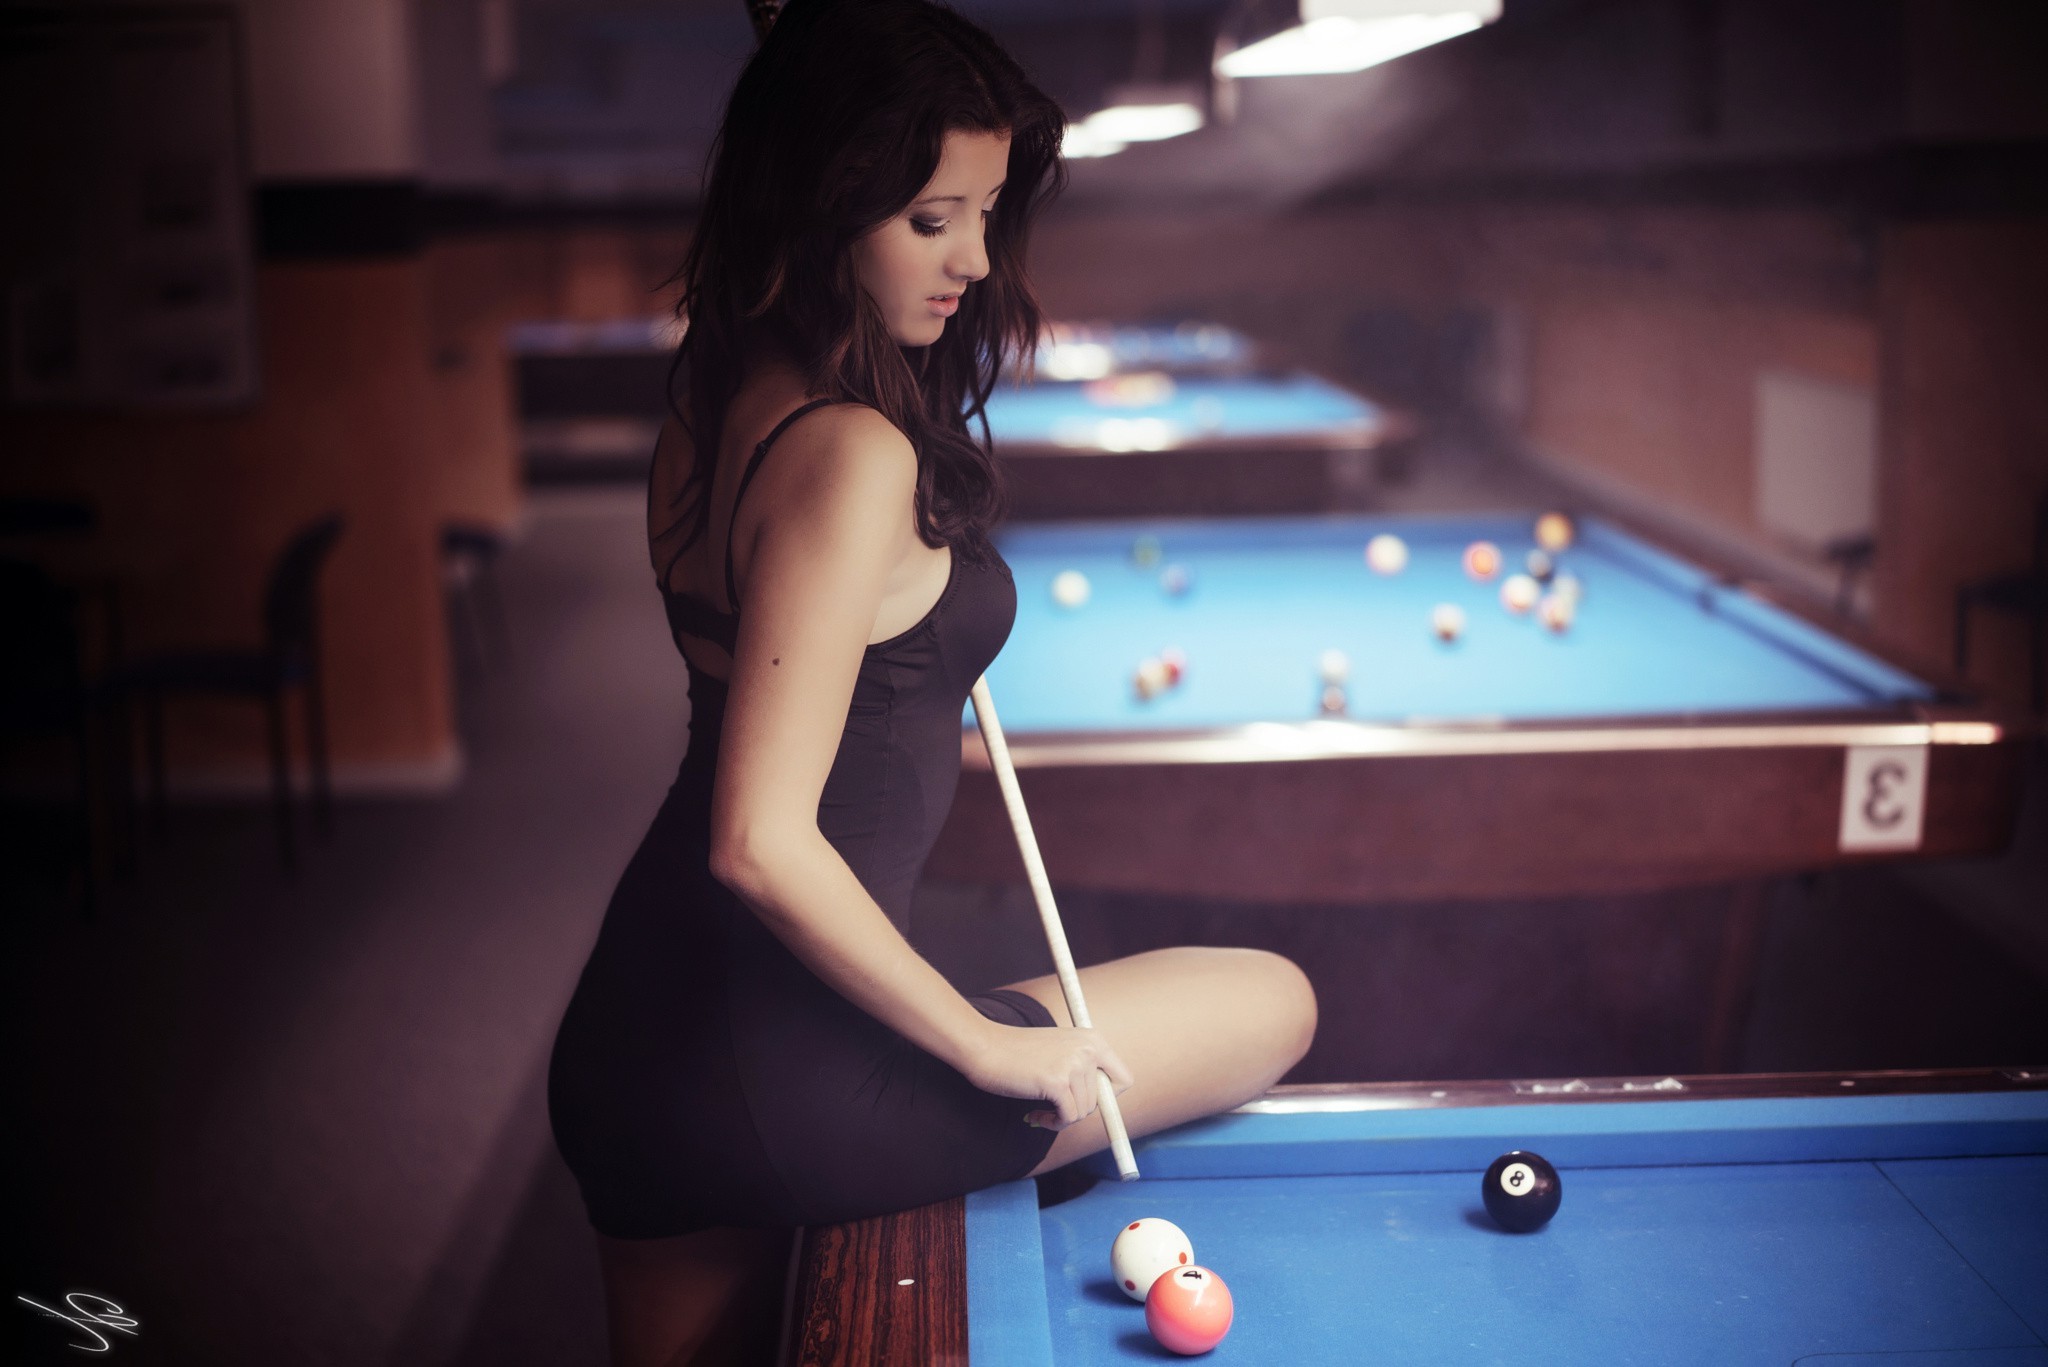 women, Model, Black Dress, Pool Table, Looking Down Wallpaper